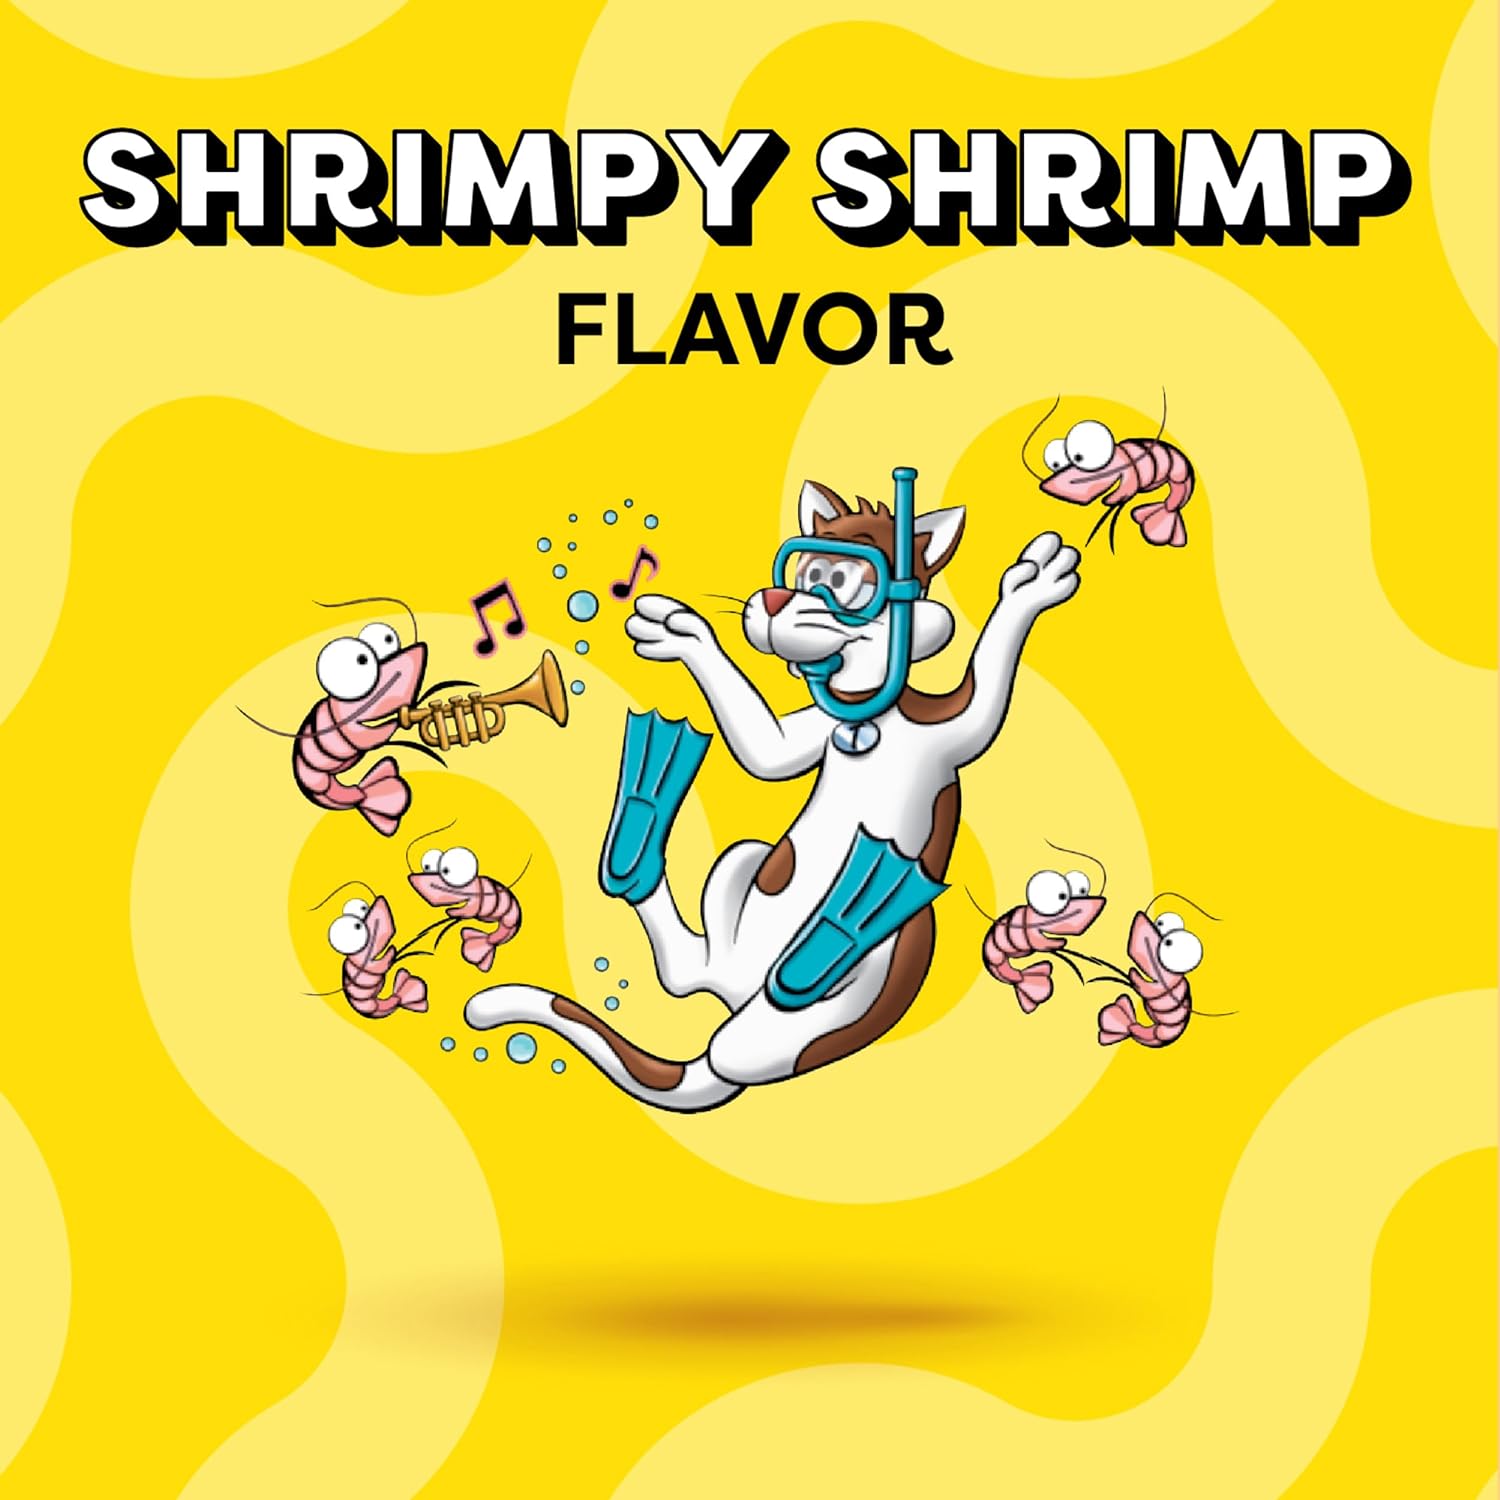 TEMPTATIONS Classic Crunchy and Soft Cat Treats Shrimpy Shrimp Flavor, 6.3 oz. Pouch : Pet Supplies